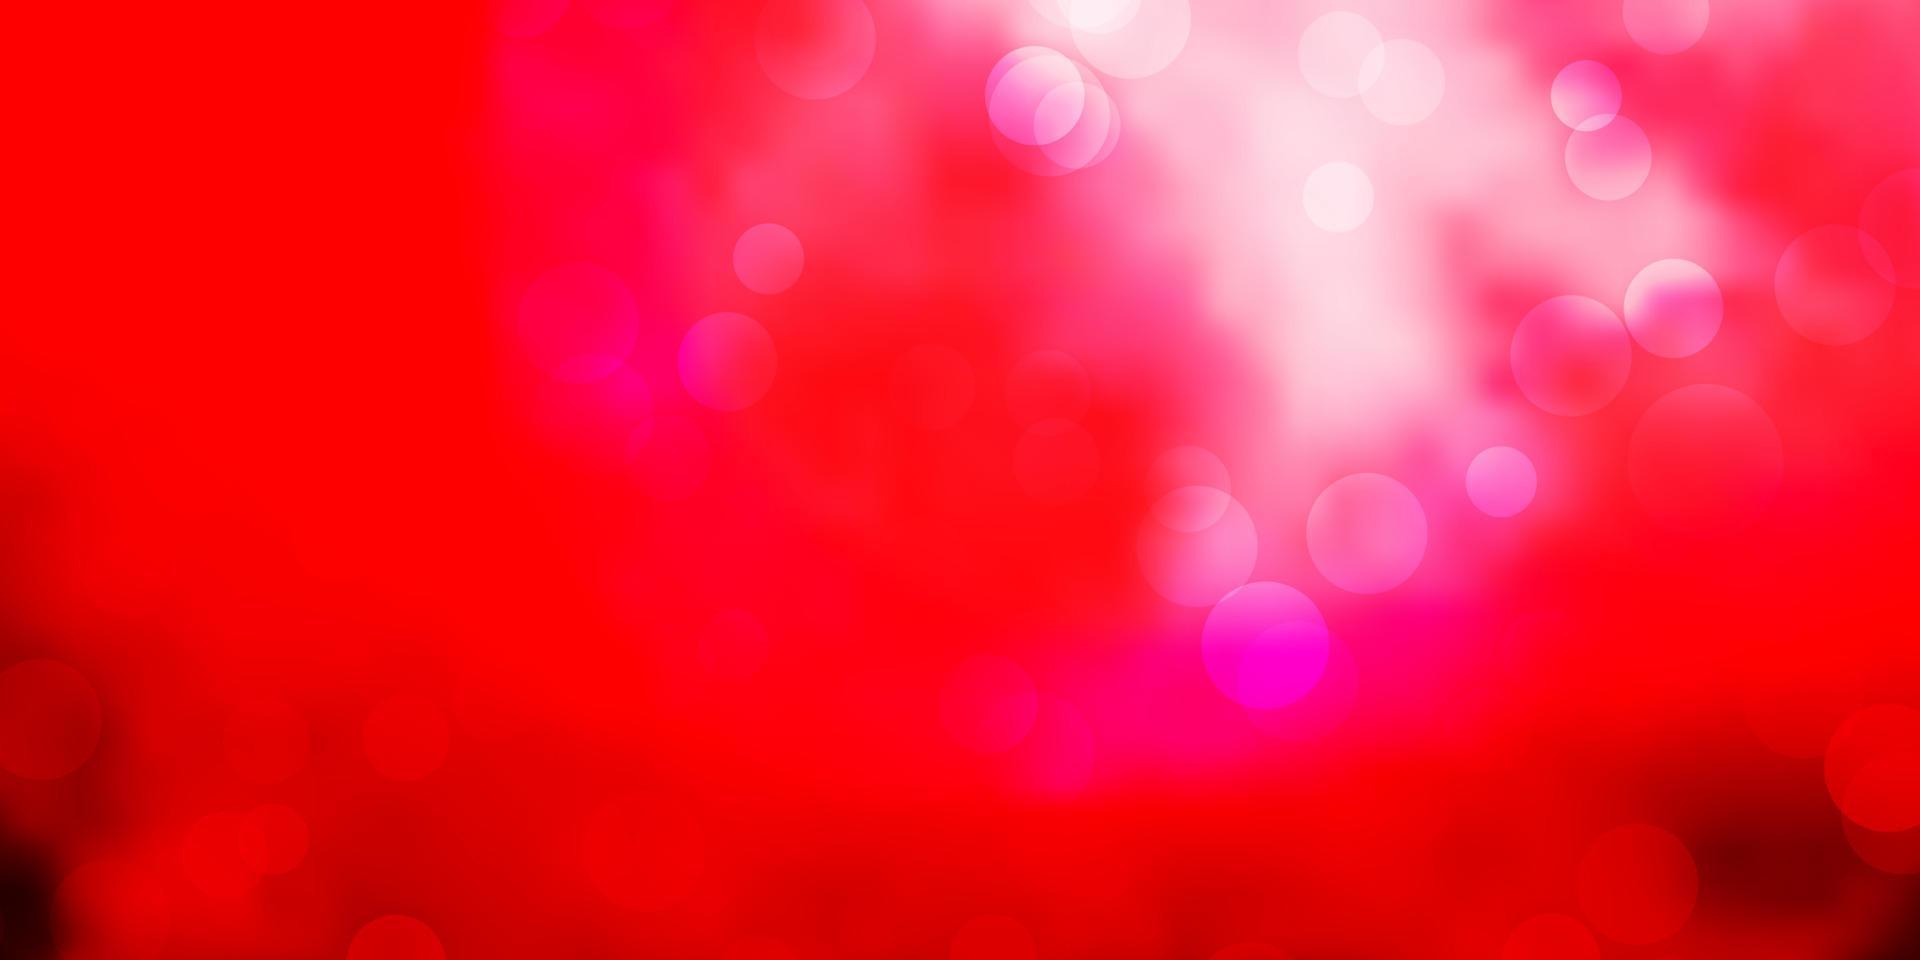 ljusrosa, röd vektorbakgrund med bubblor. vektor